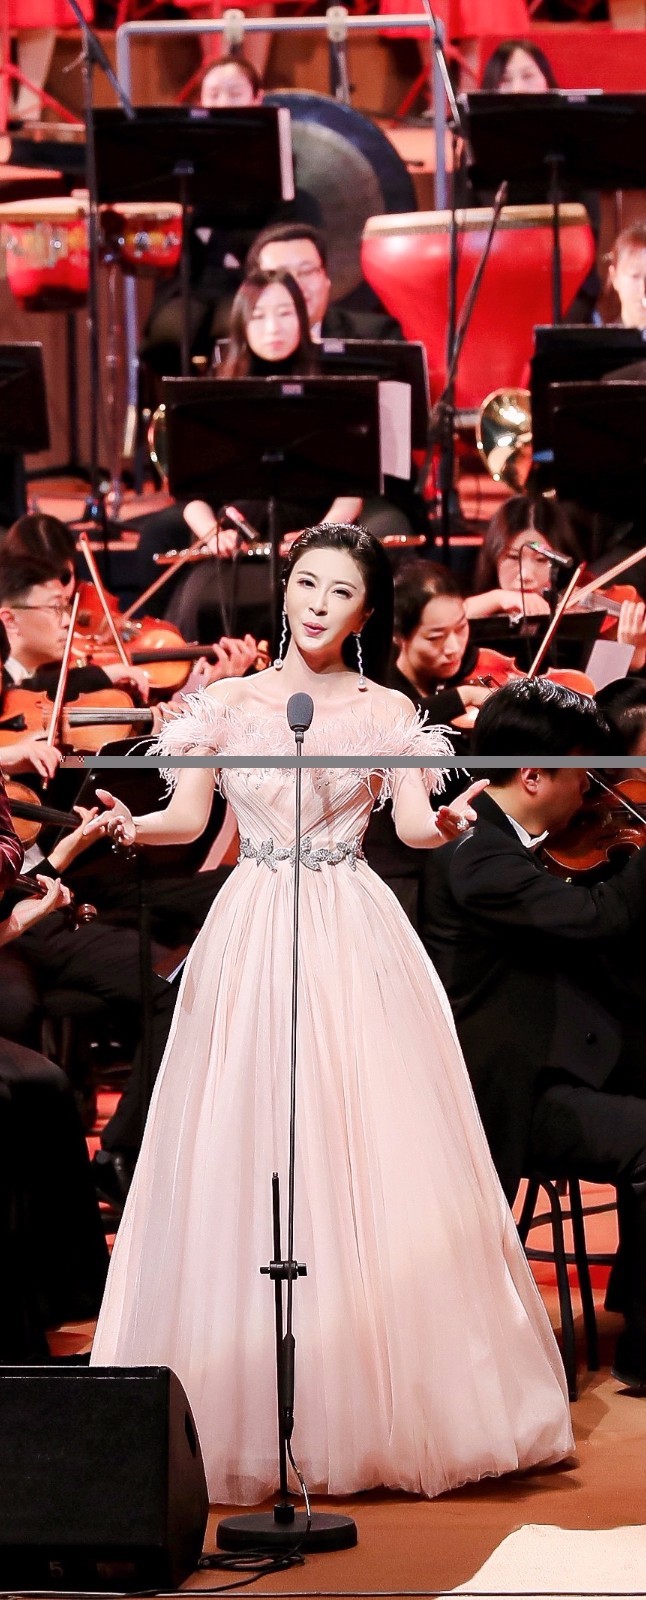 伊丽媛唱响国家大剧院《小康之歌》主题音乐会 用歌声礼赞新时代中国精神